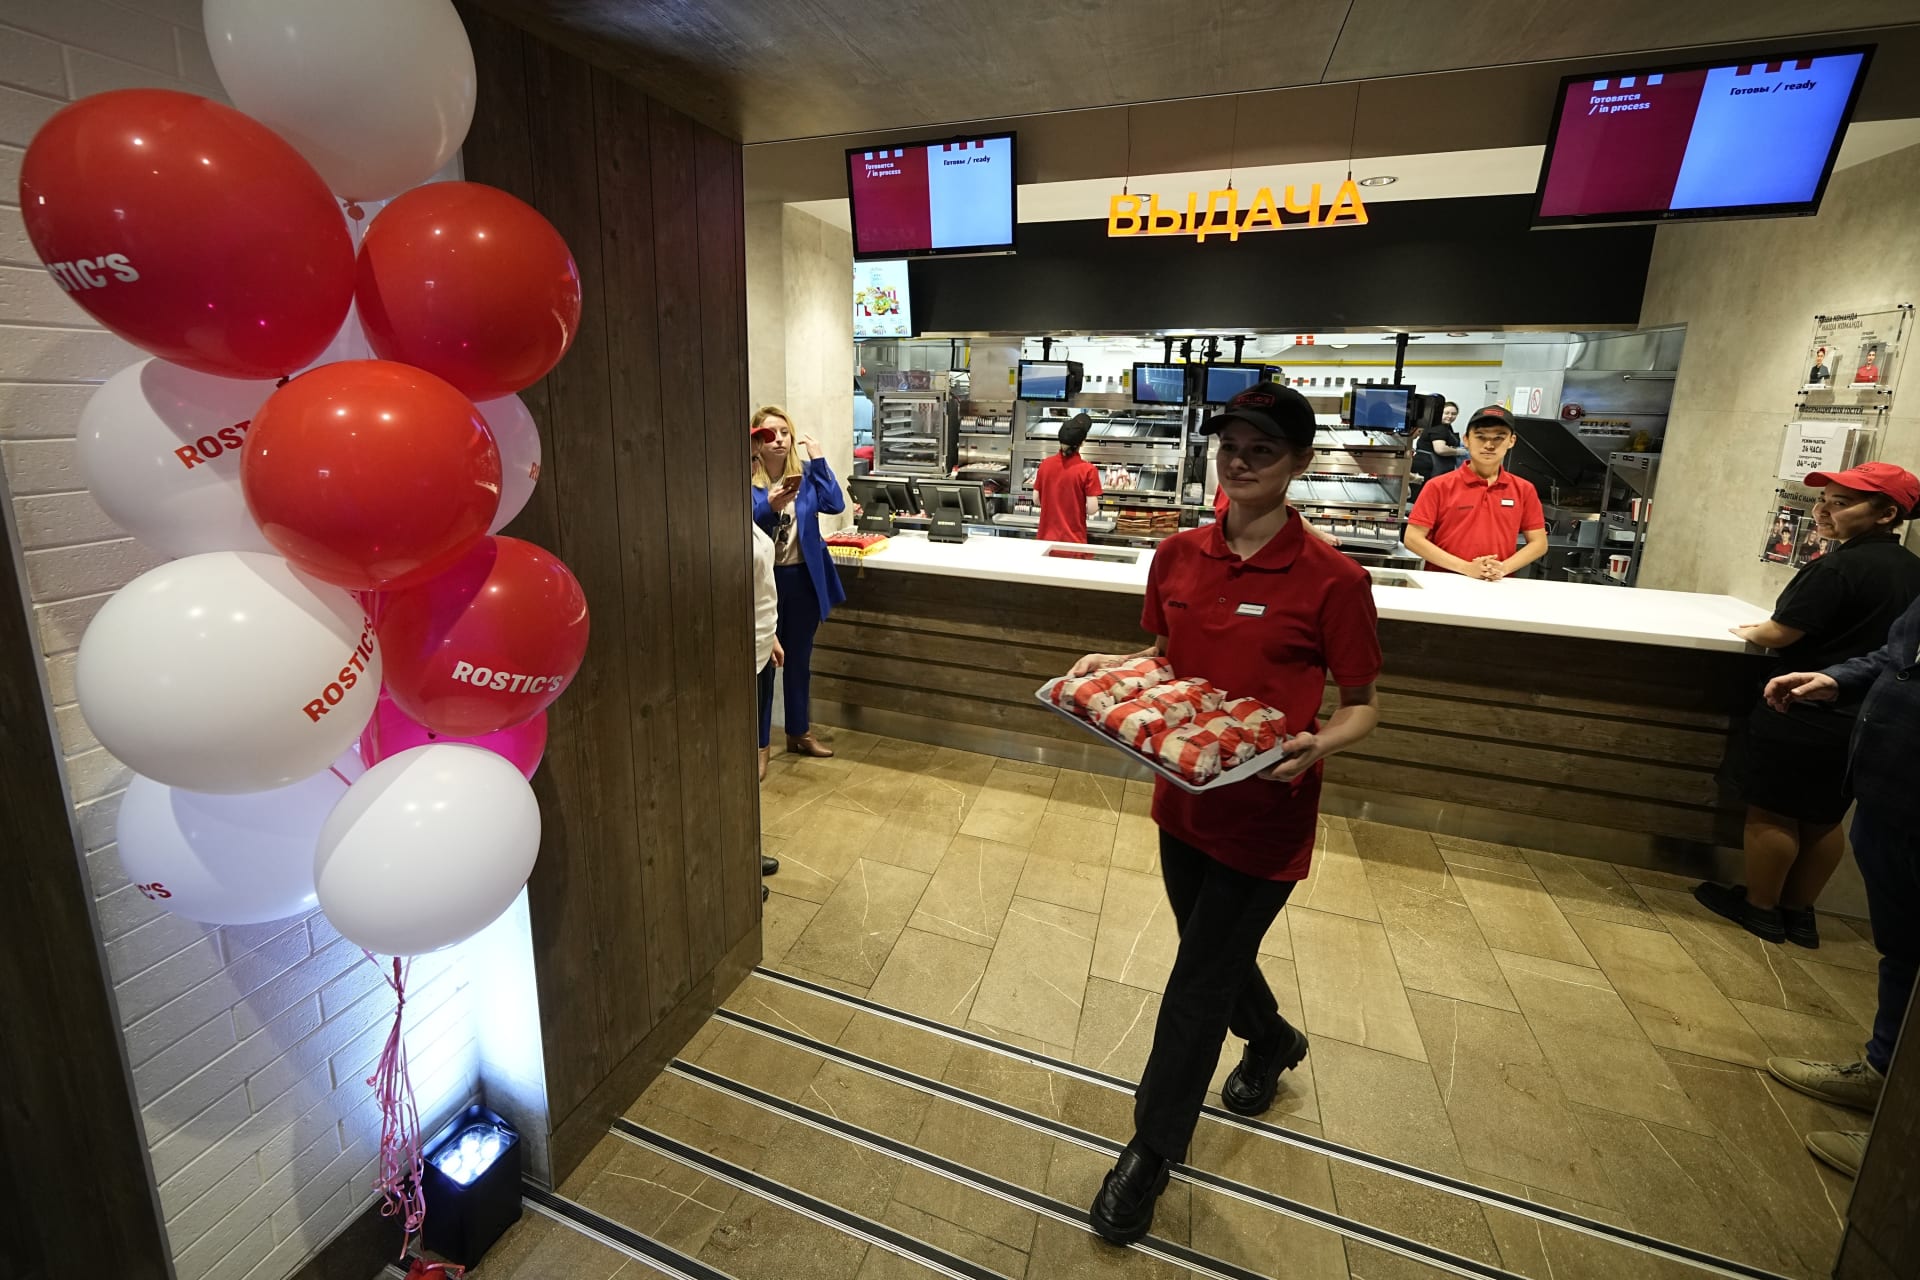 Slavnostní otevření ruské kopie KFC v Moskvě